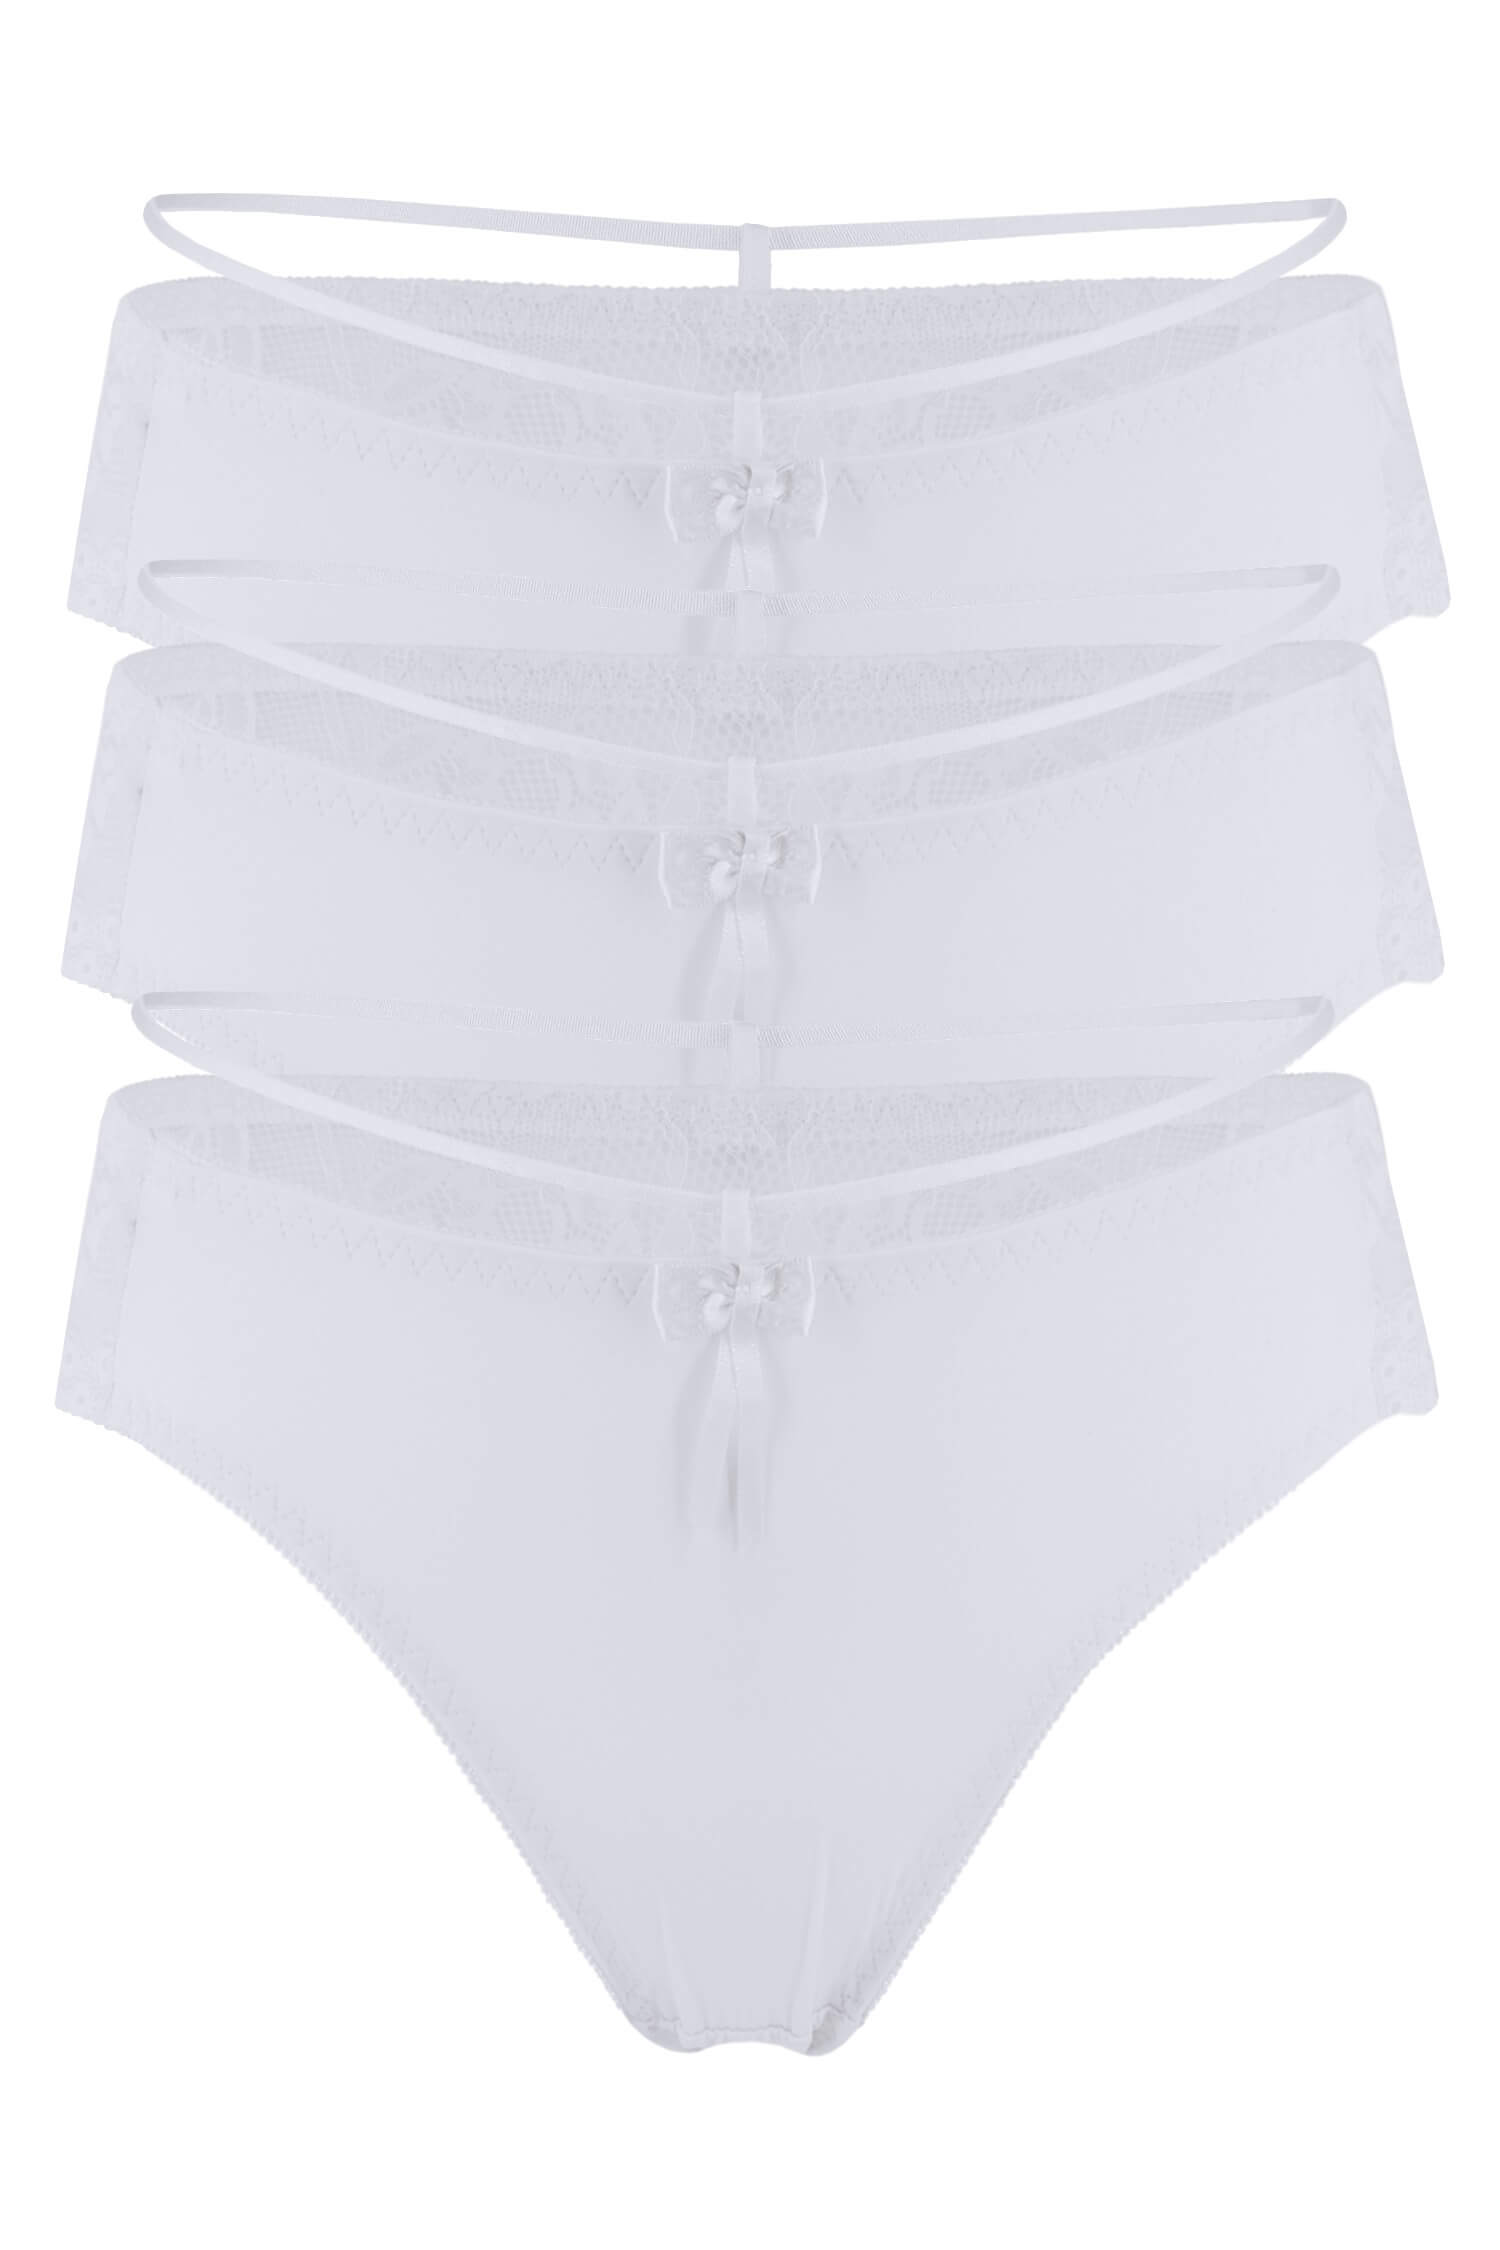 Anastázie kalhotky s krajkou 8690 - 3bal XL bílá